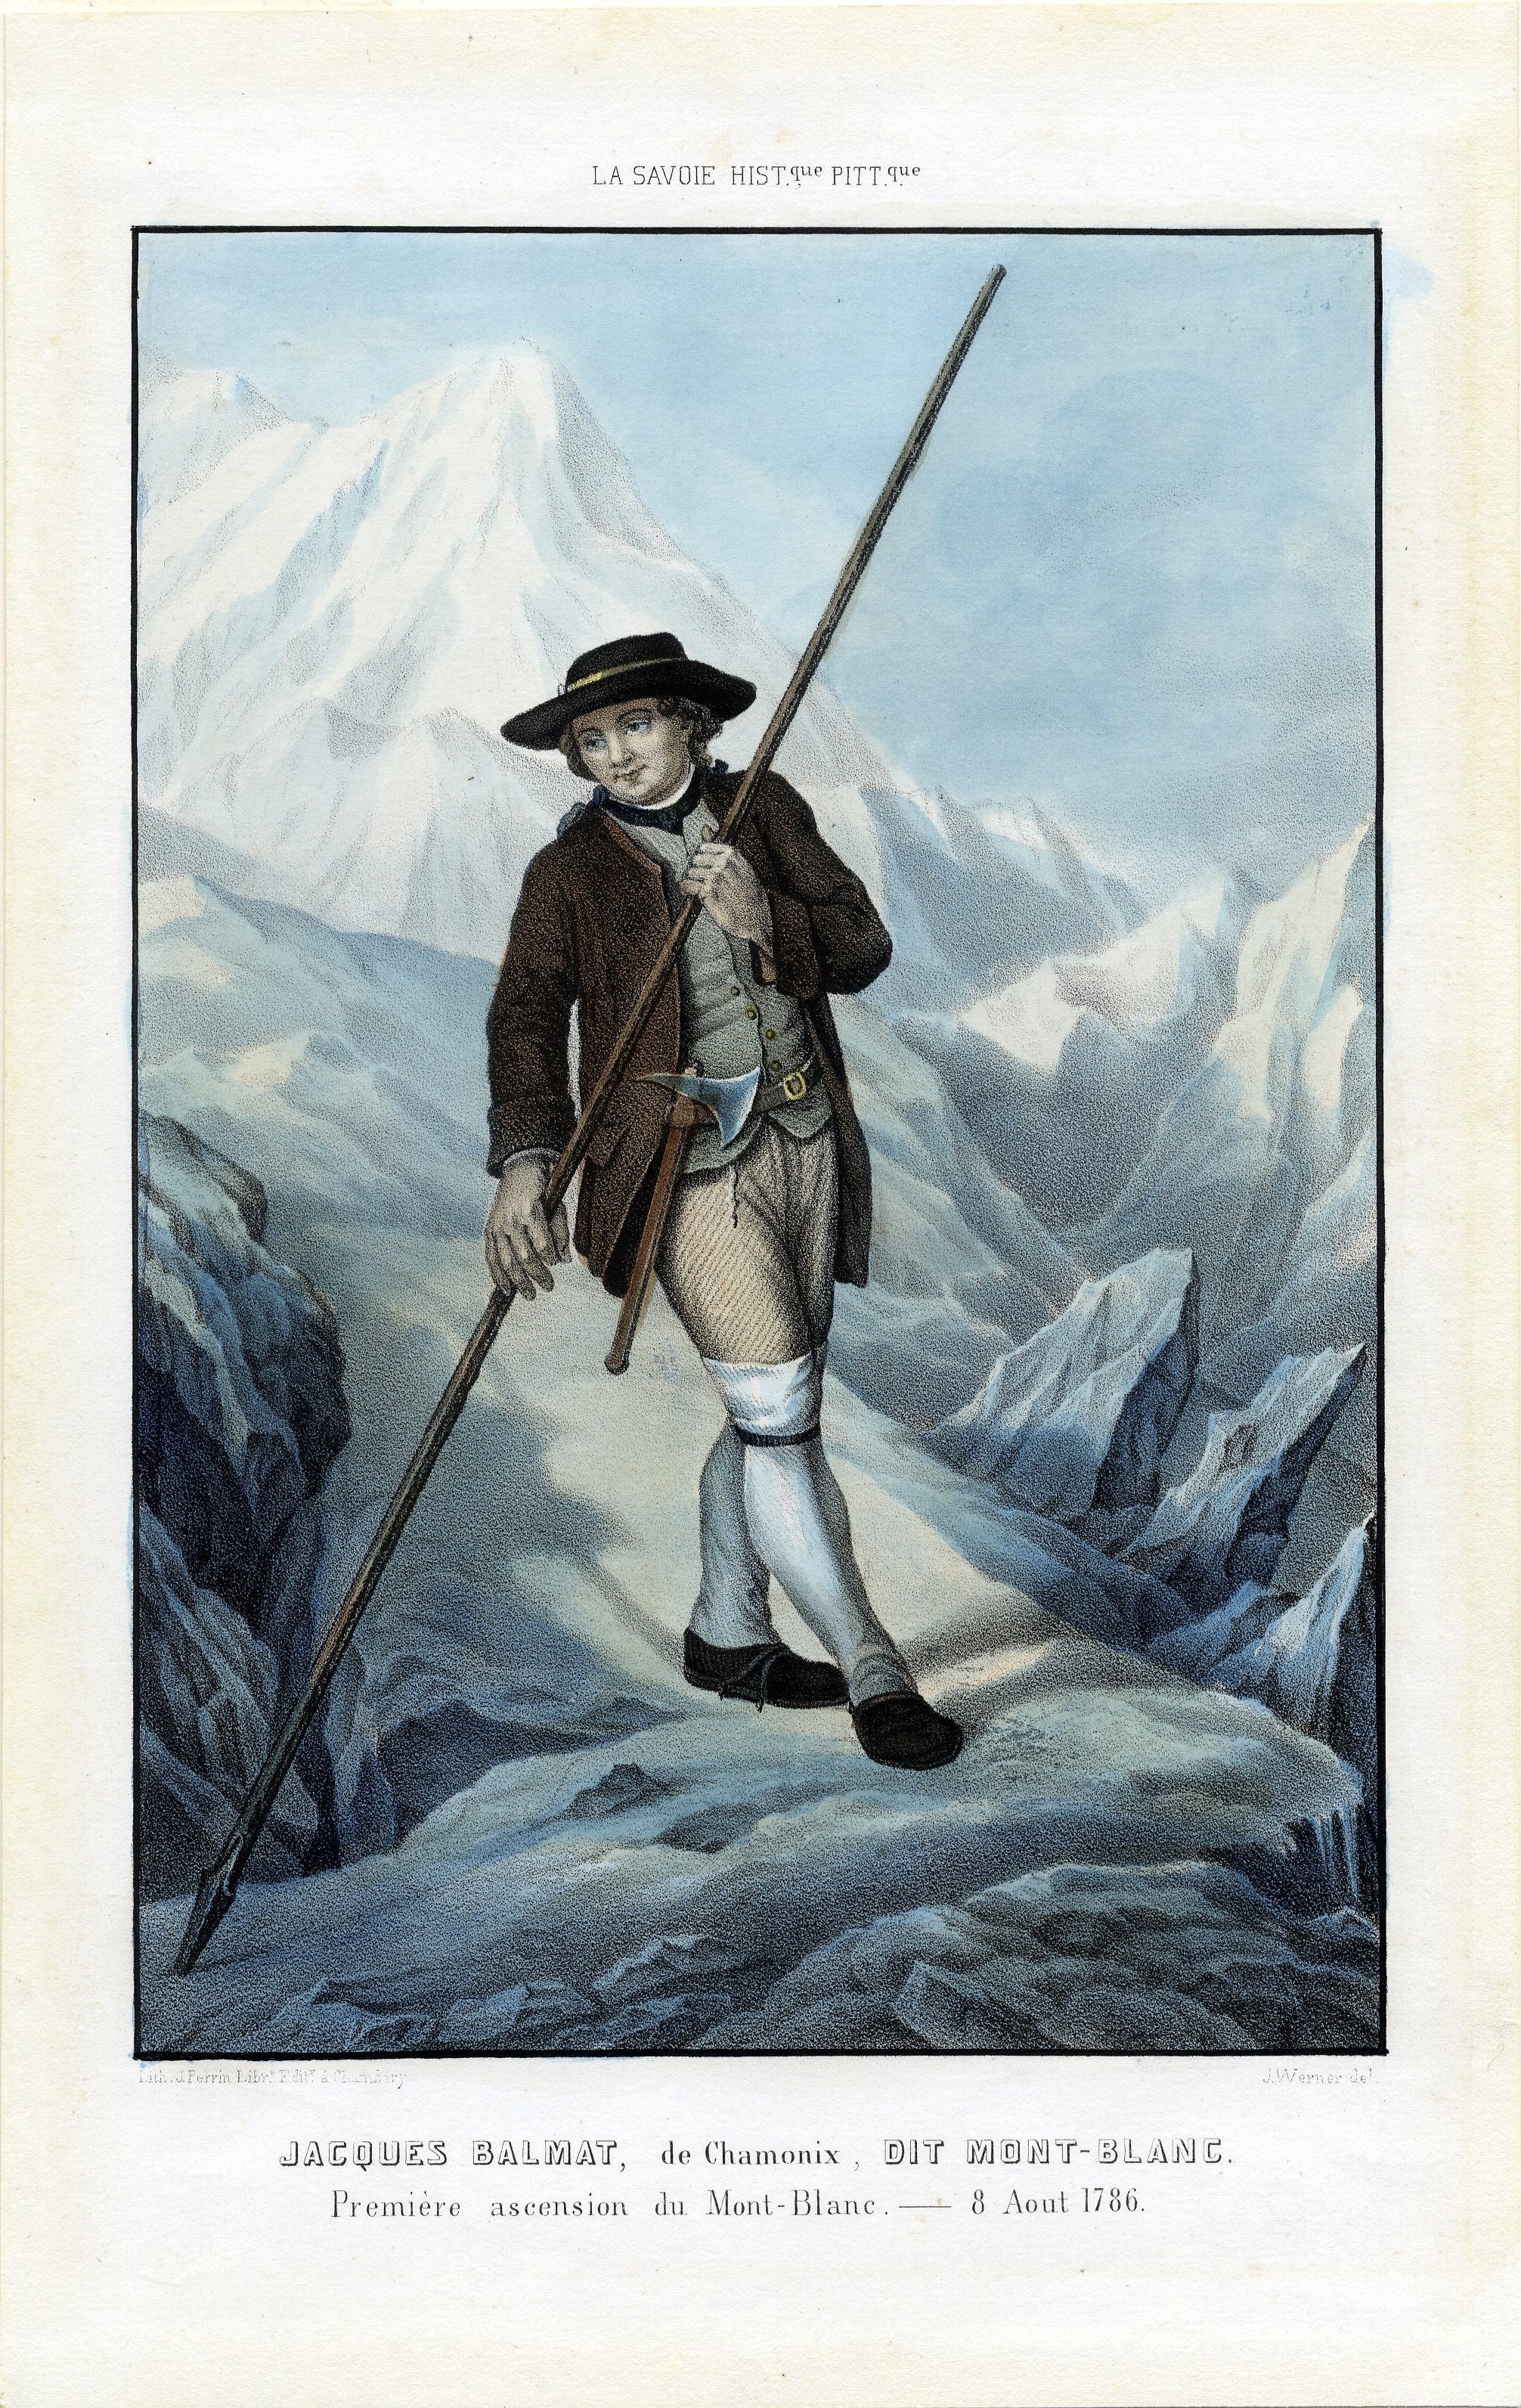 La première ascension du Mont Blanc